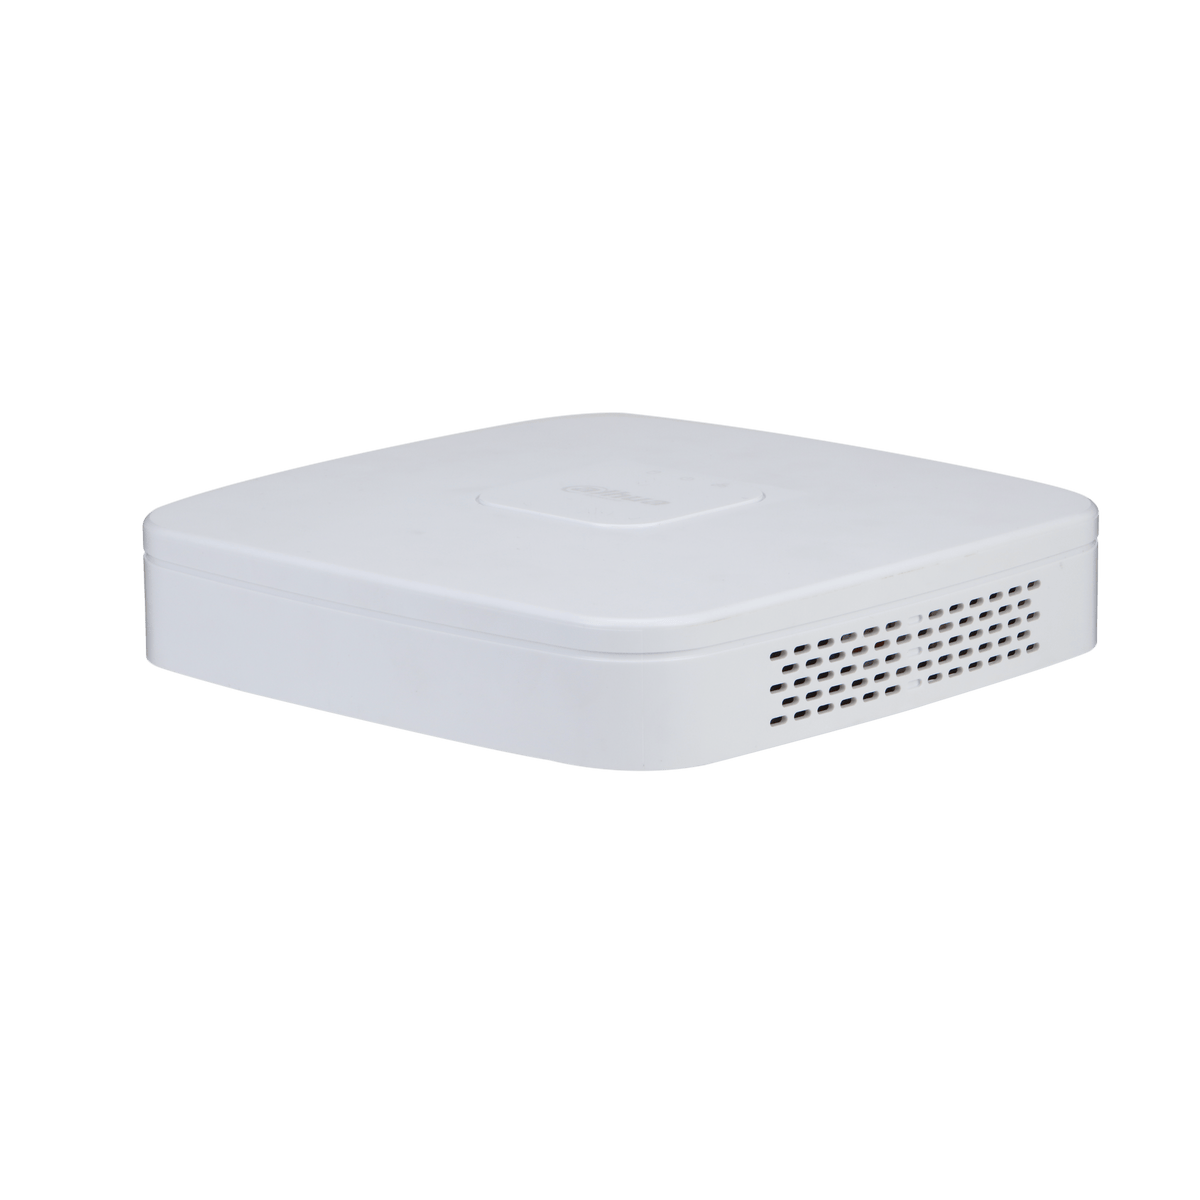 DAHUA NVR4116-4KS2/L 16 Channel Smart 1U 1HDD Network Video Recorder